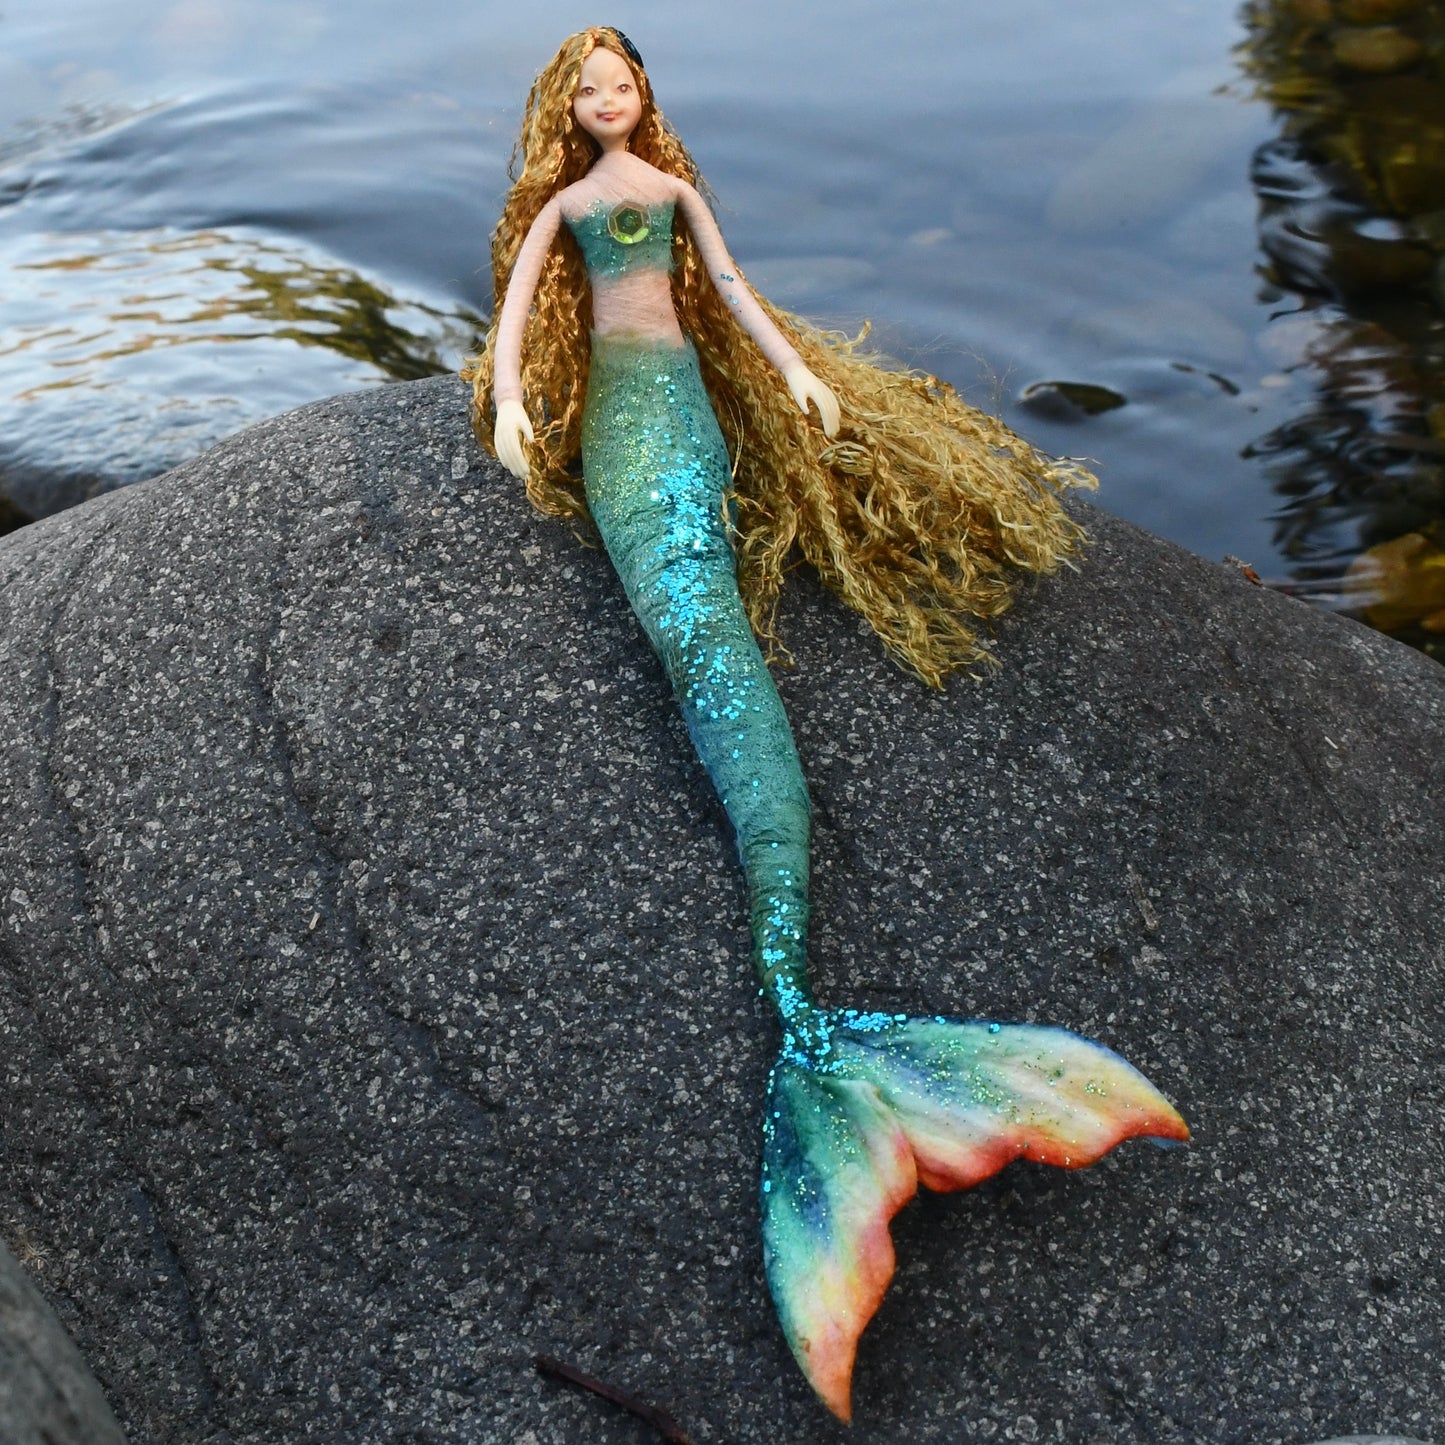 Fae Folk® Mermaid - DARIA